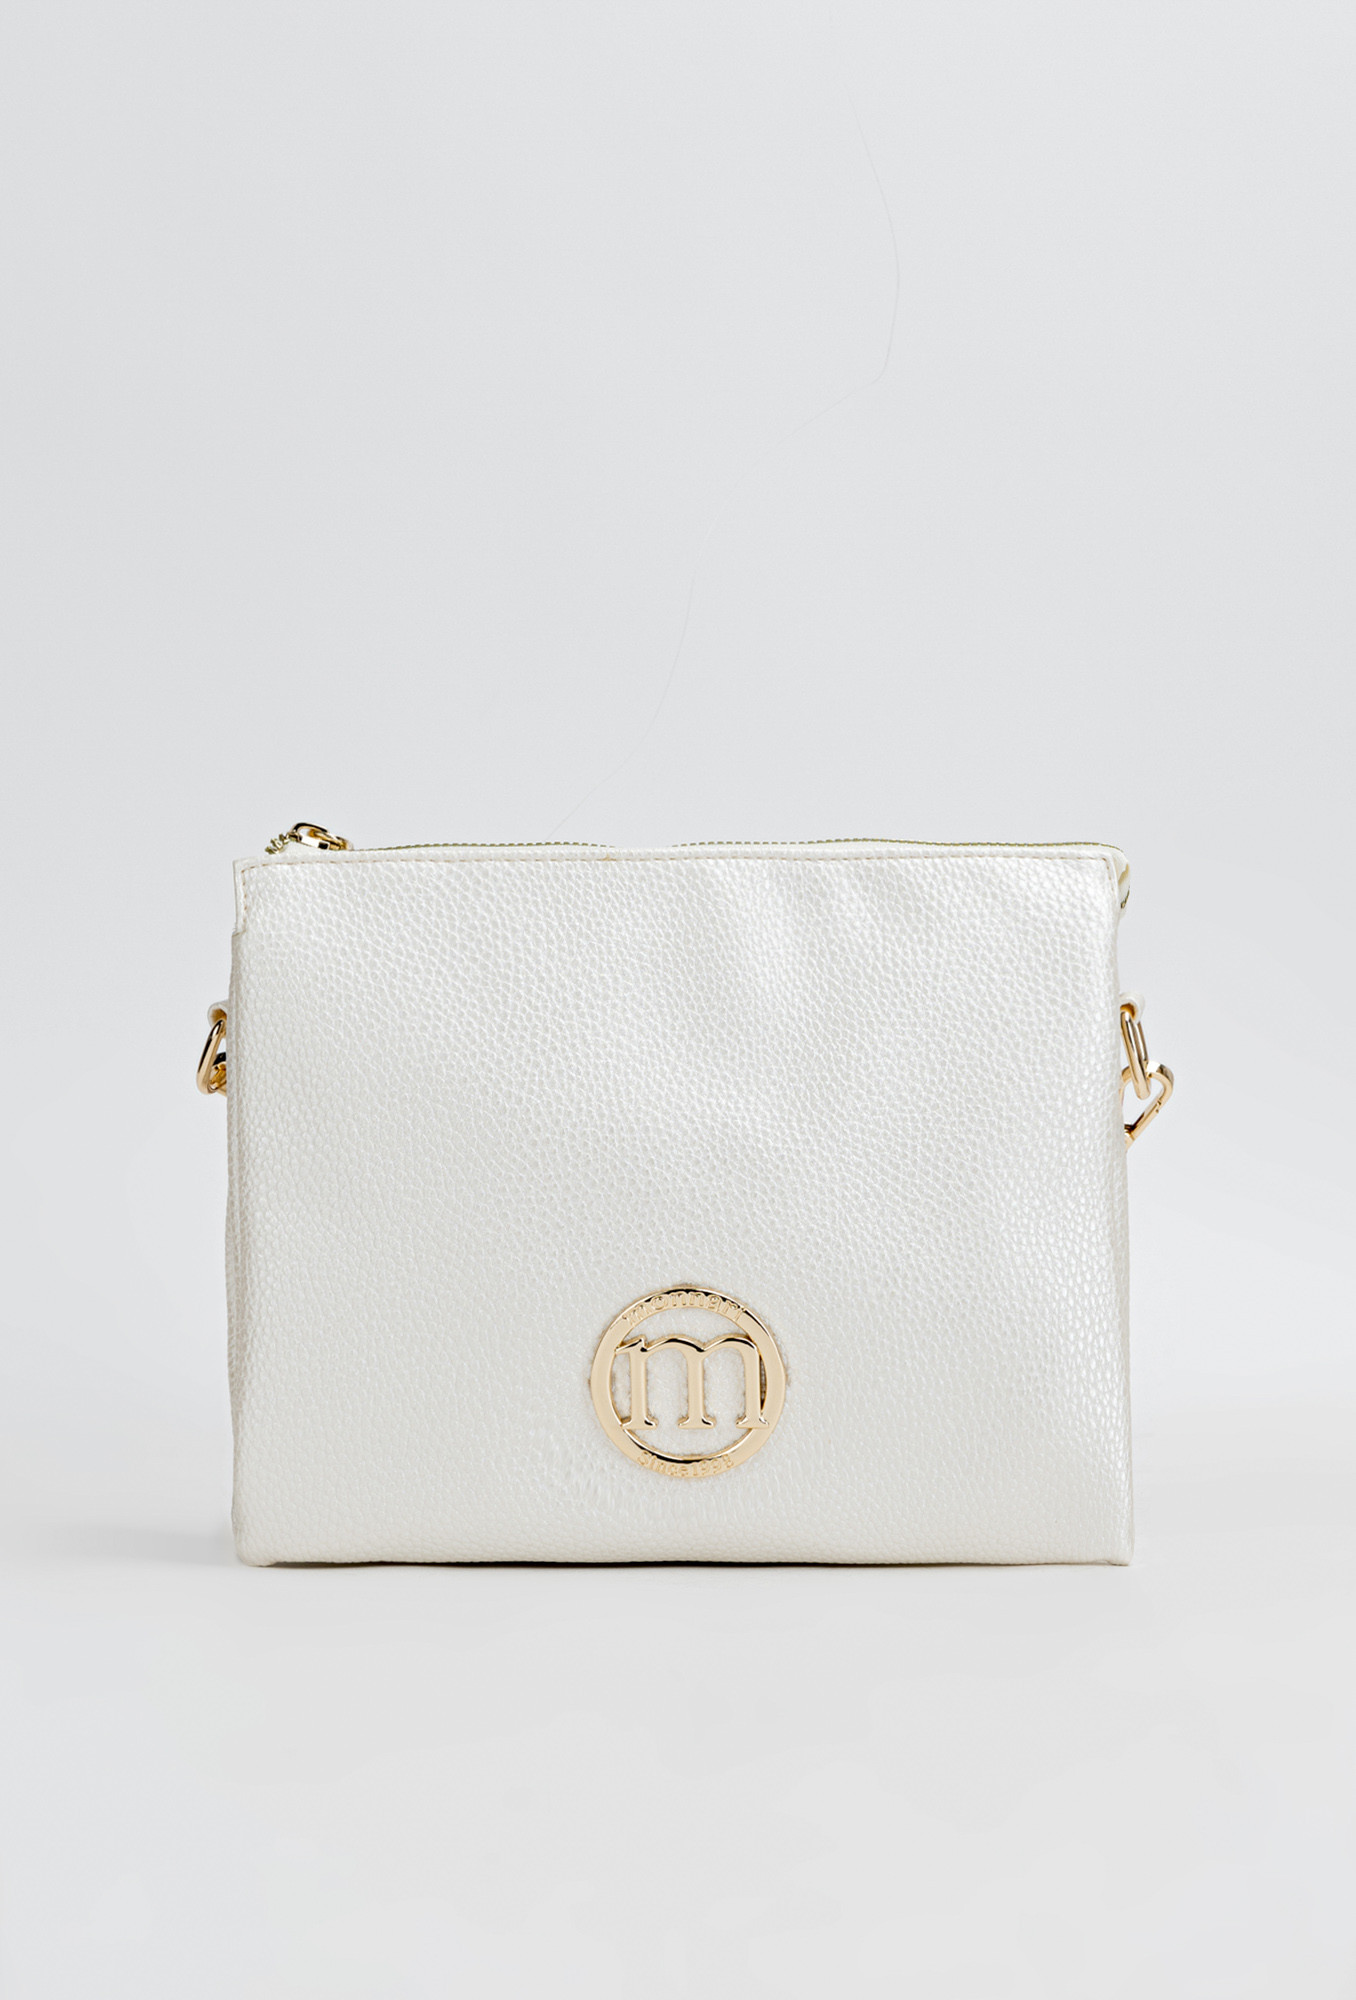 Monnari Bags Dámská kabelka s logem značky Monnari Multi White OS